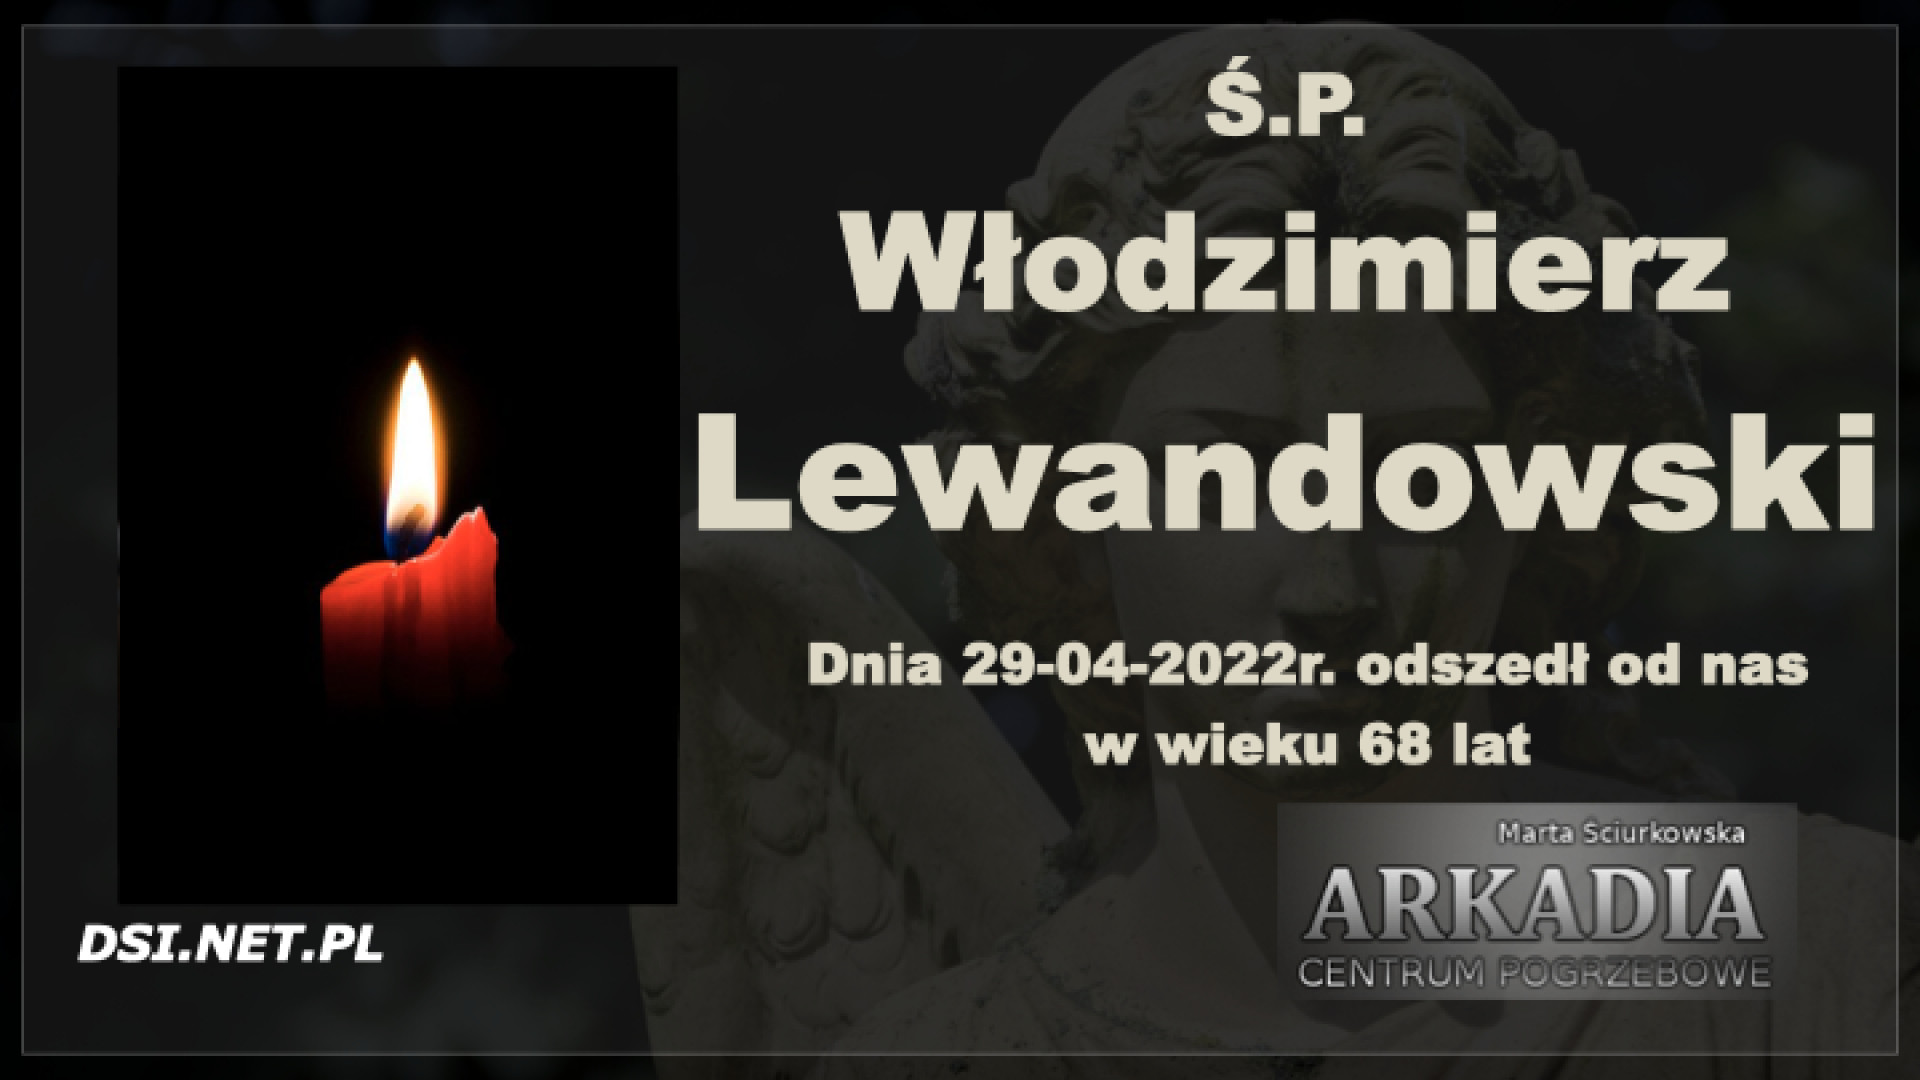 Ś.P. Włodzimierz Lewandowski